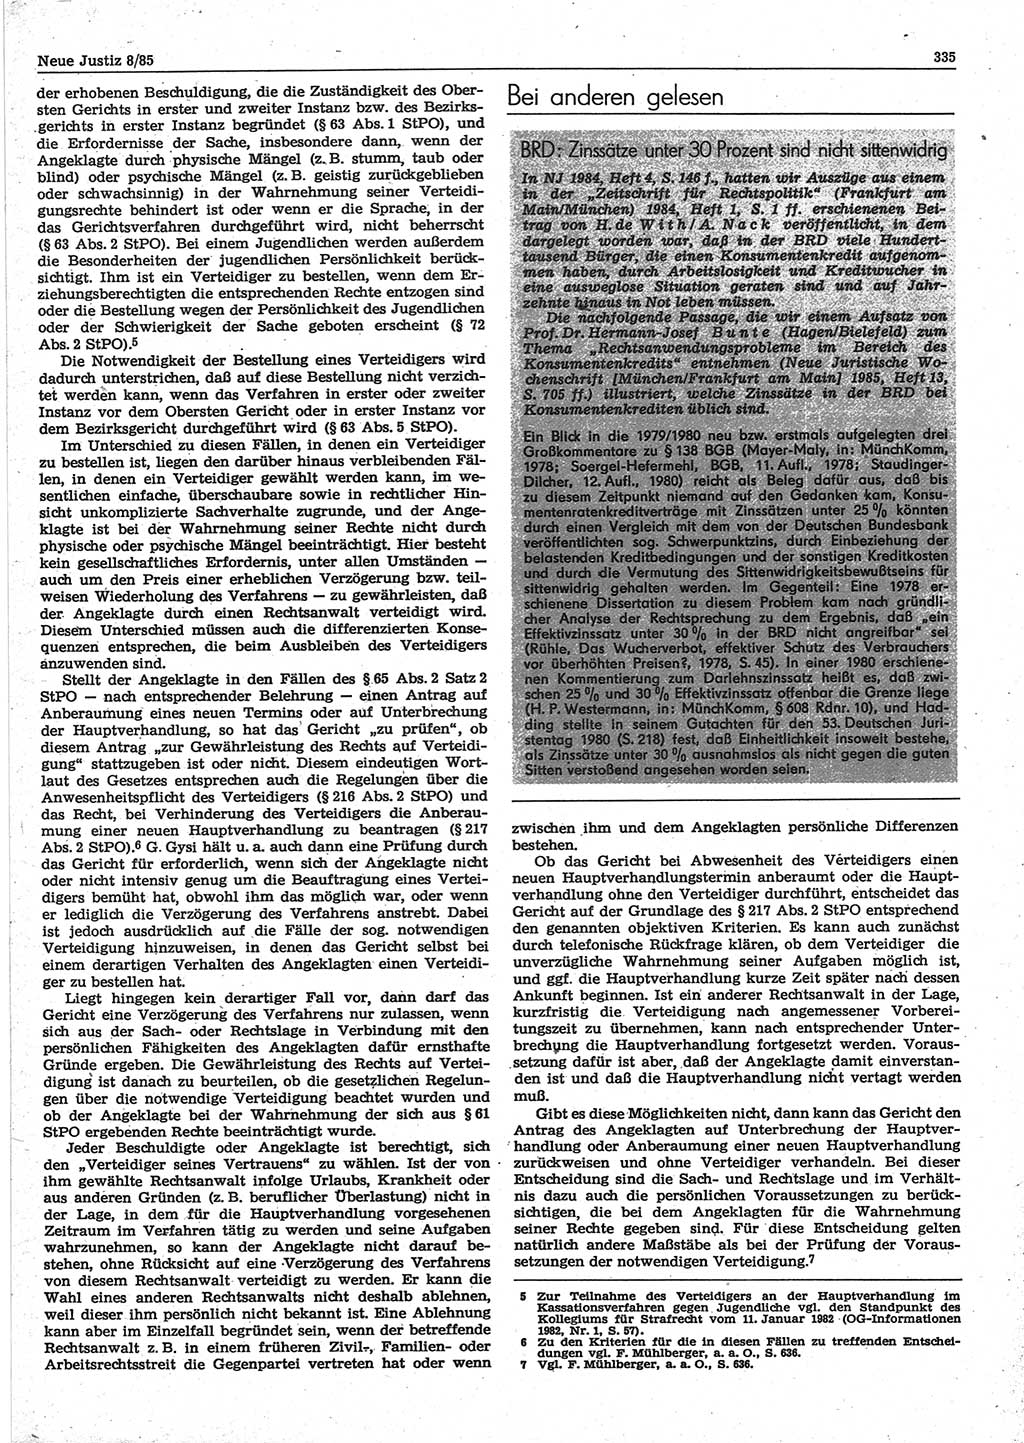 Neue Justiz (NJ), Zeitschrift für sozialistisches Recht und Gesetzlichkeit [Deutsche Demokratische Republik (DDR)], 39. Jahrgang 1985, Seite 335 (NJ DDR 1985, S. 335)